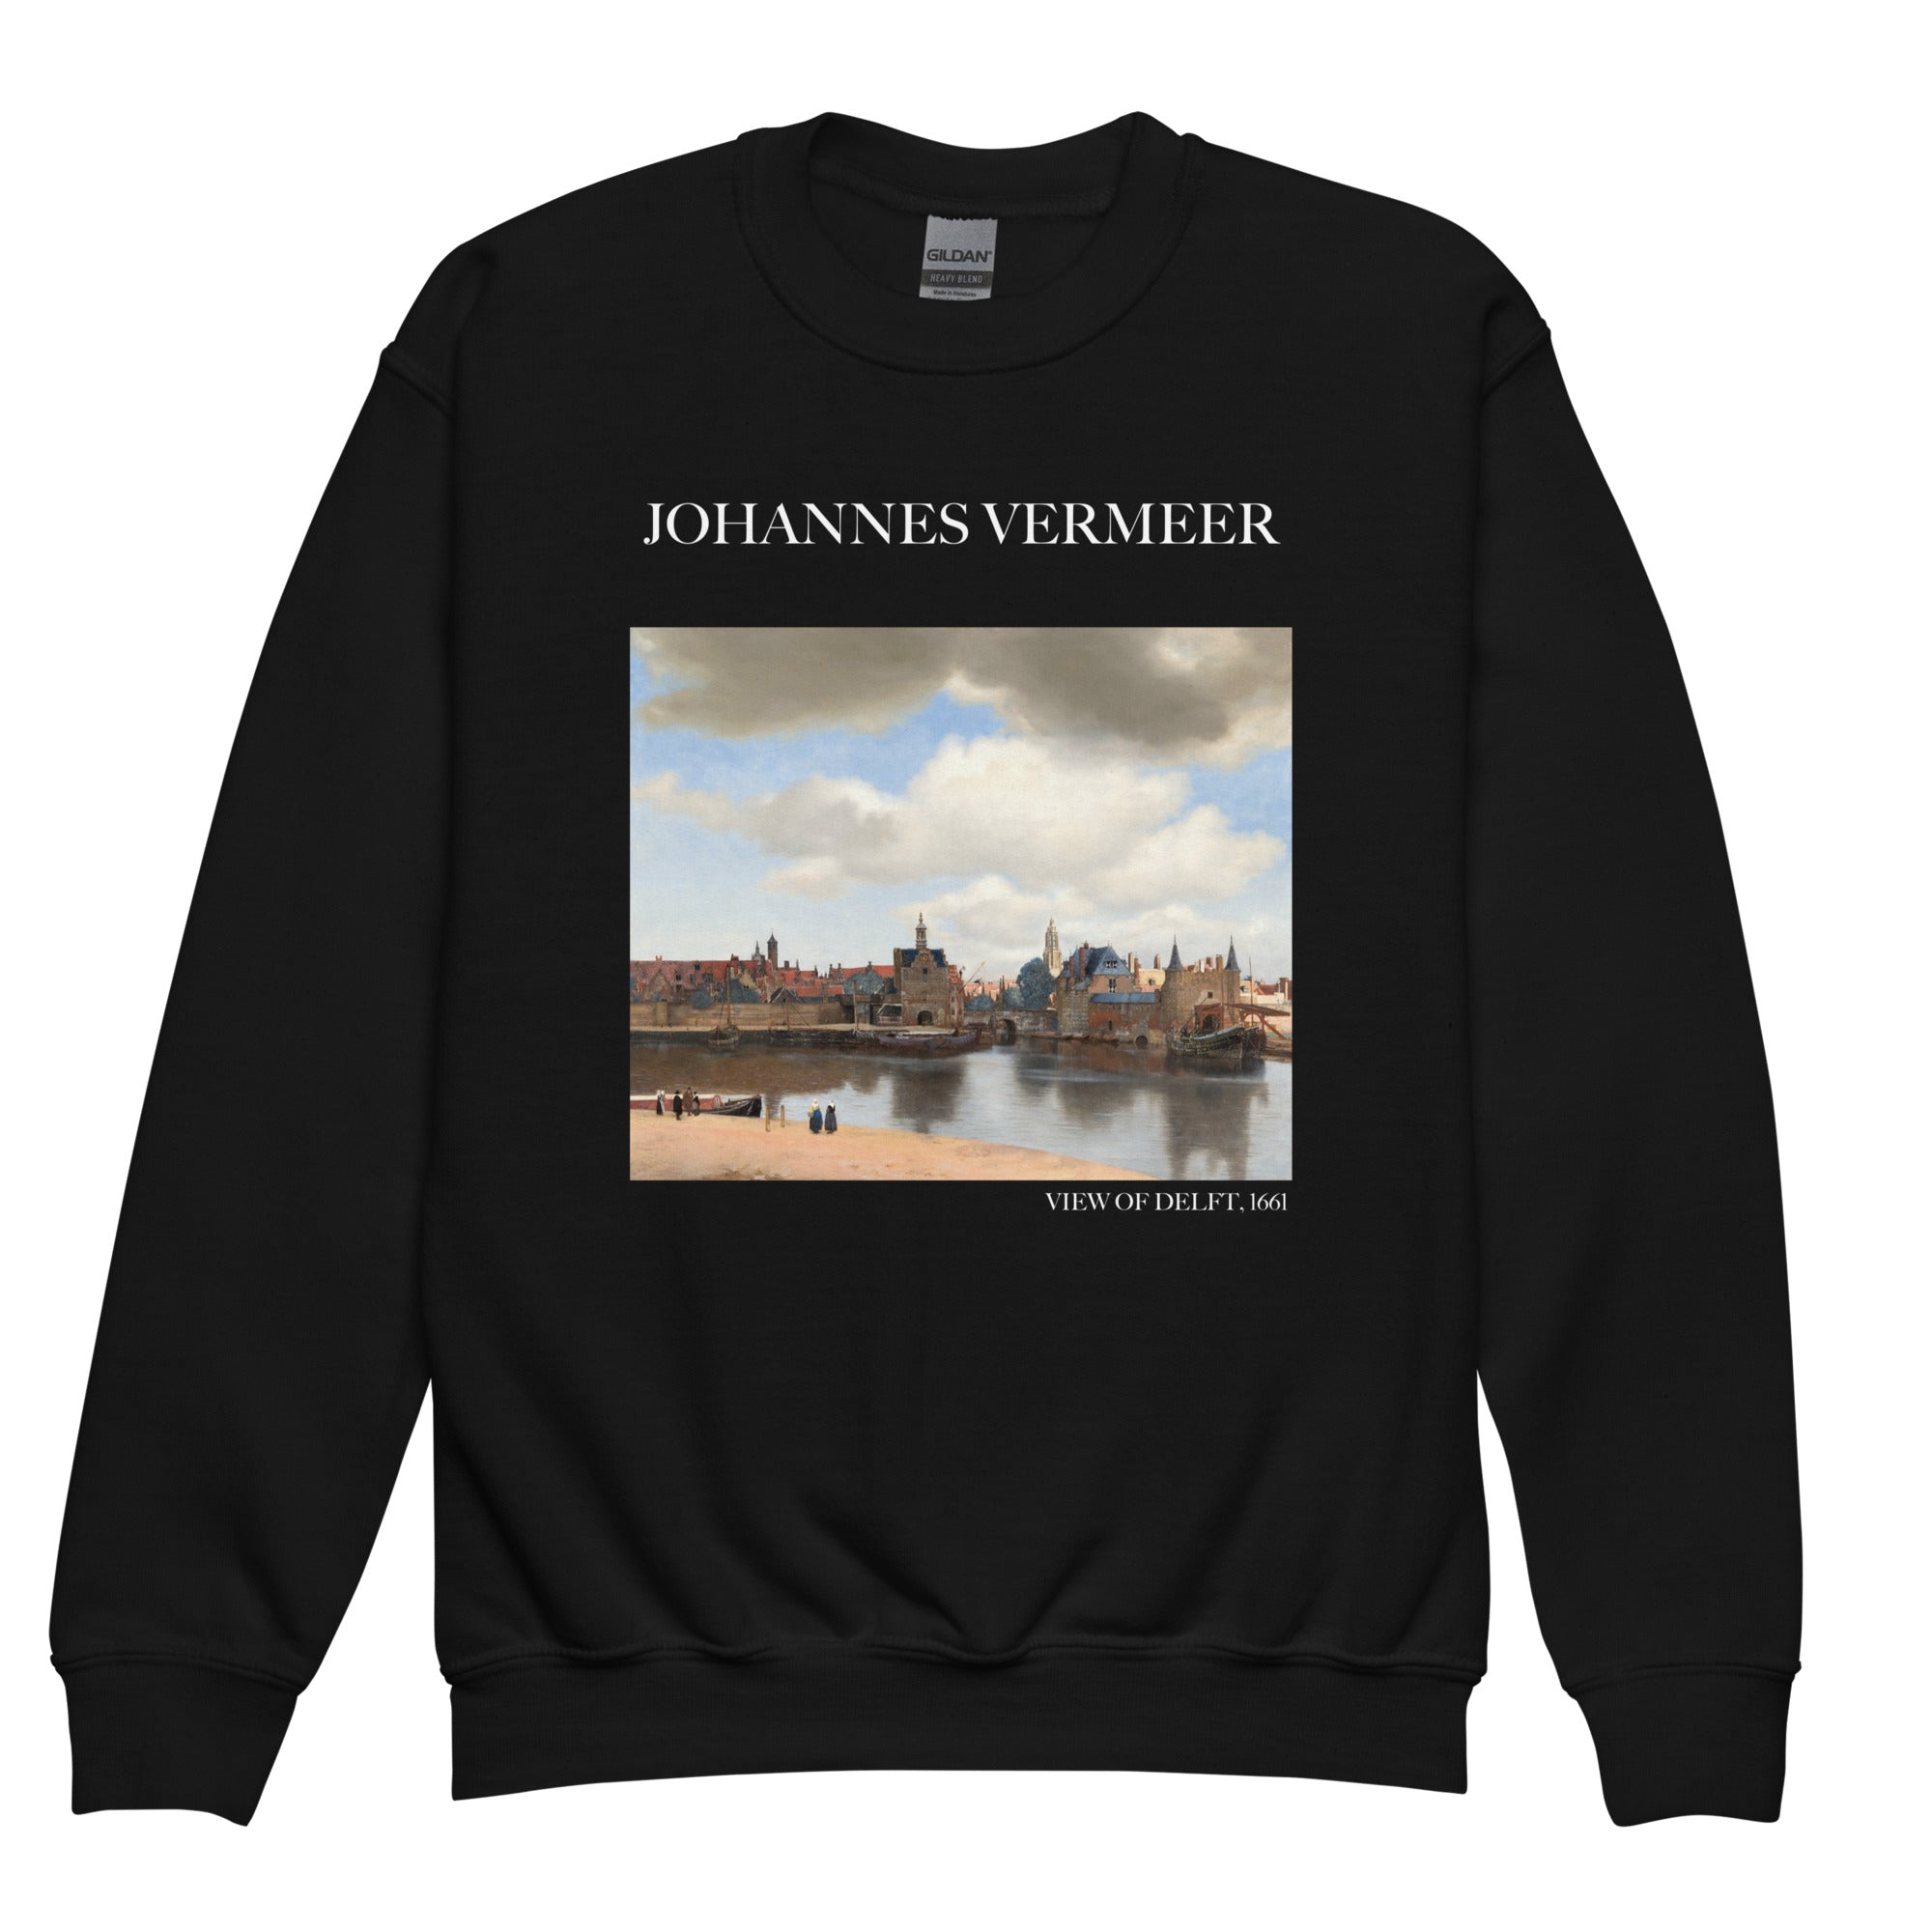 Johannes Vermeer 'View of Delft' Famous Painting Crewneck Sweatshirt | Premium Youth Art Sweatshirt